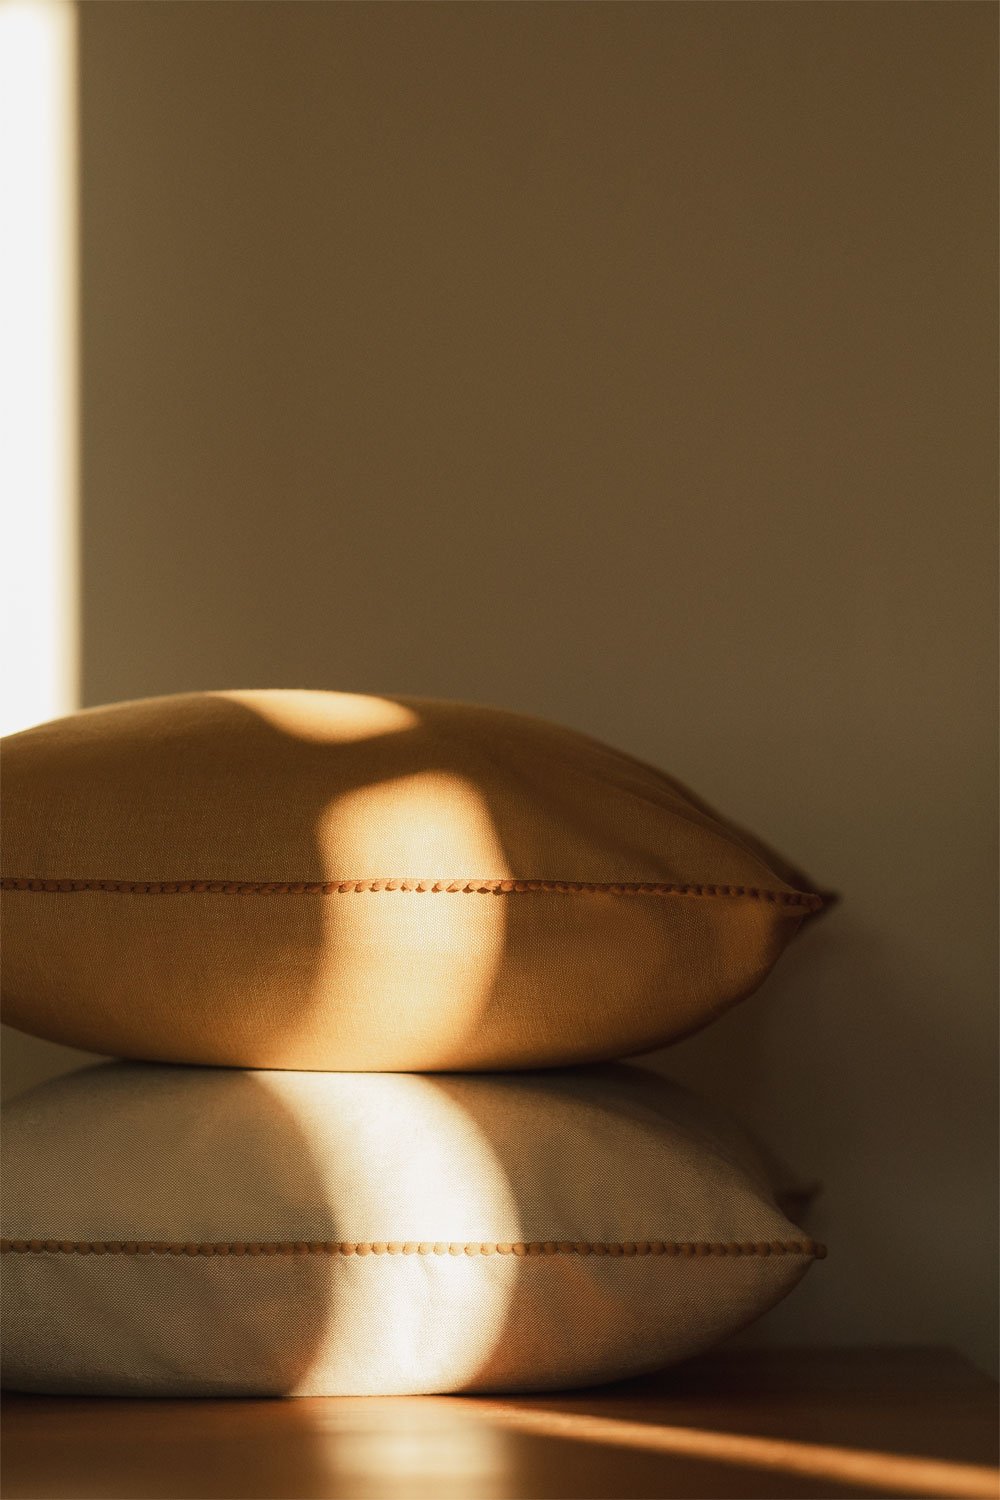 Cuscino quadrato in cotone (45x45 cm) Marmai, immagine della galleria 1